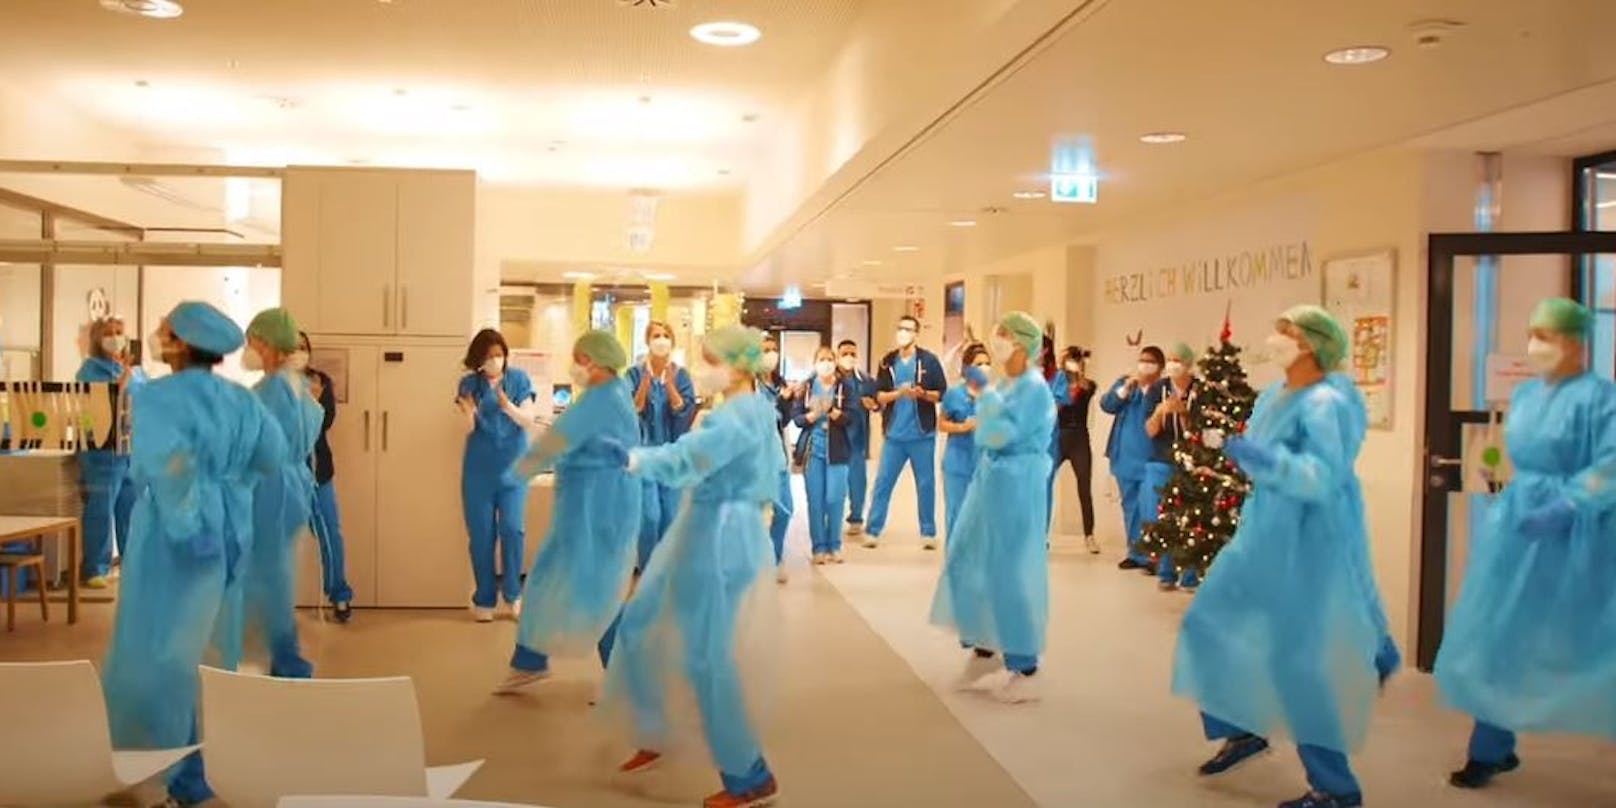 Das Tanzvideo der Mitarbeiter der Klinik Floridsdorf geht viral